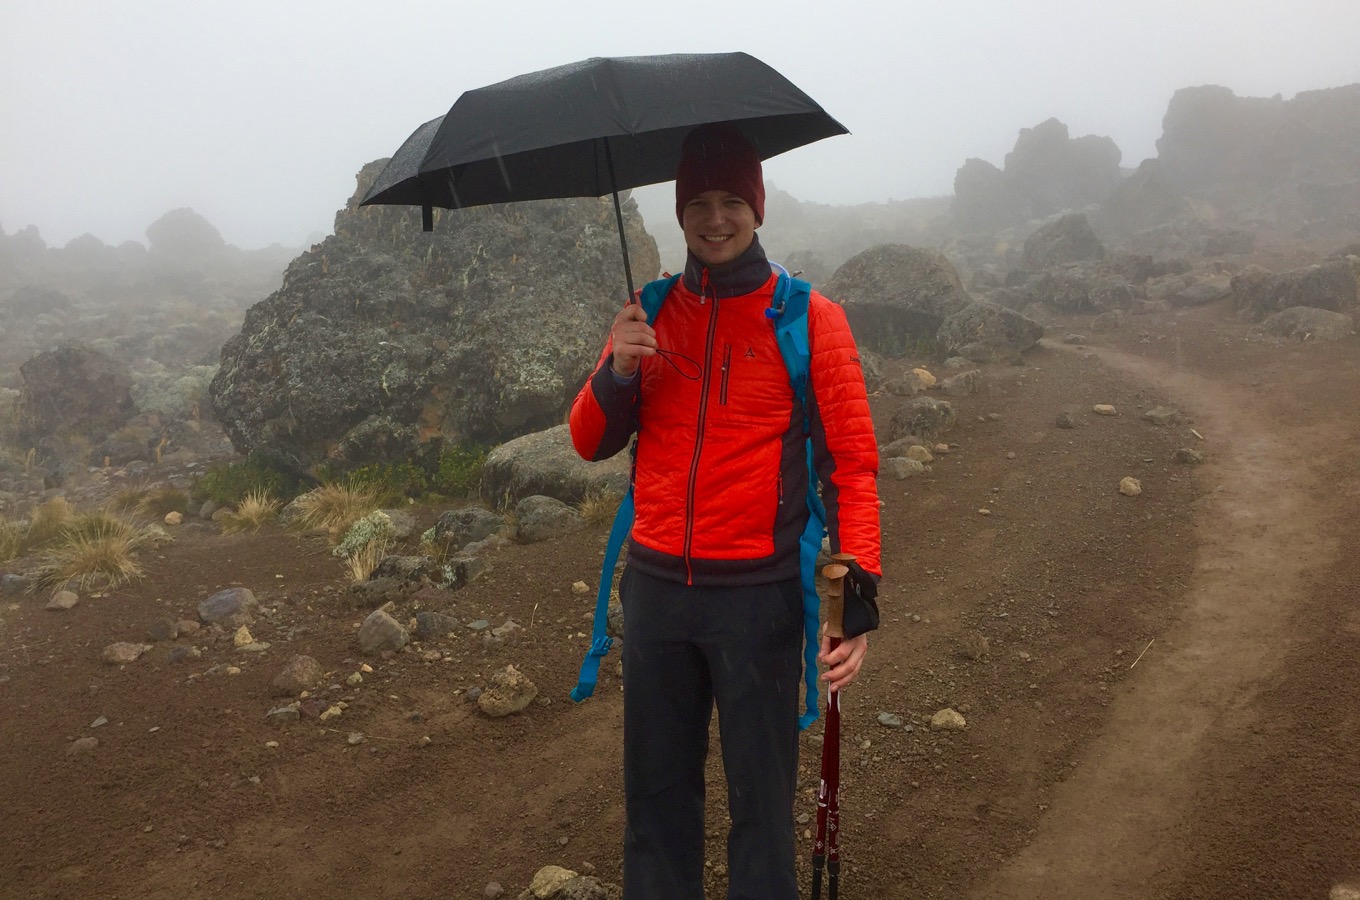 Parapluie pendant l’ascension du Kilimandjaro